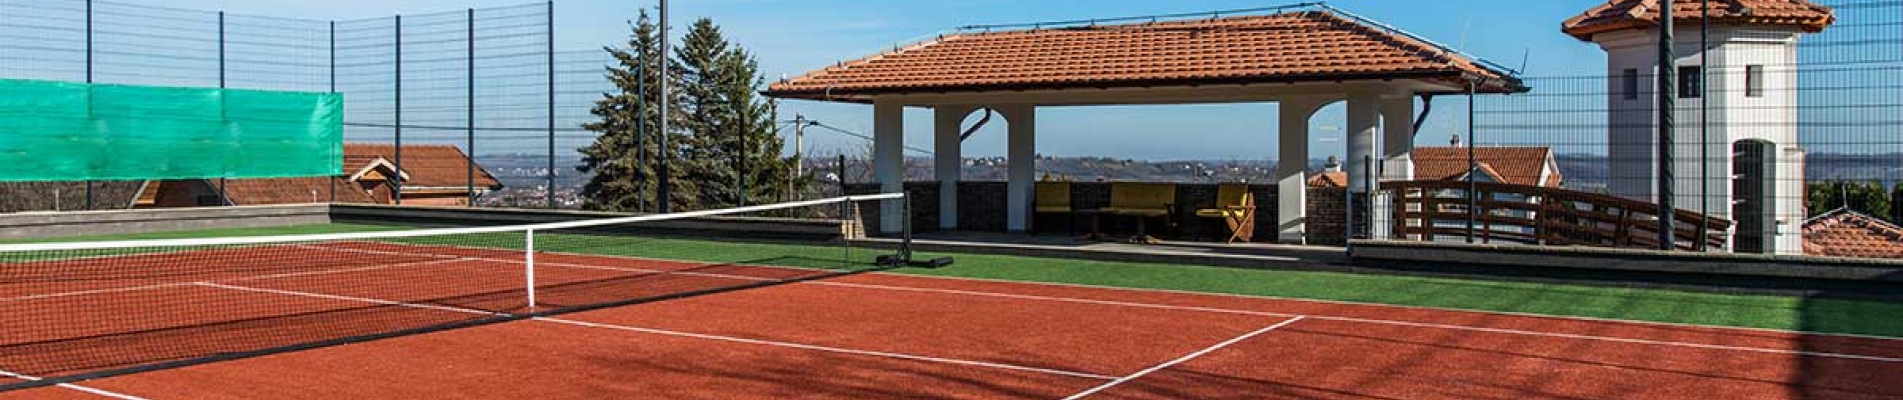 Artificial Grass Tennis Court Construction